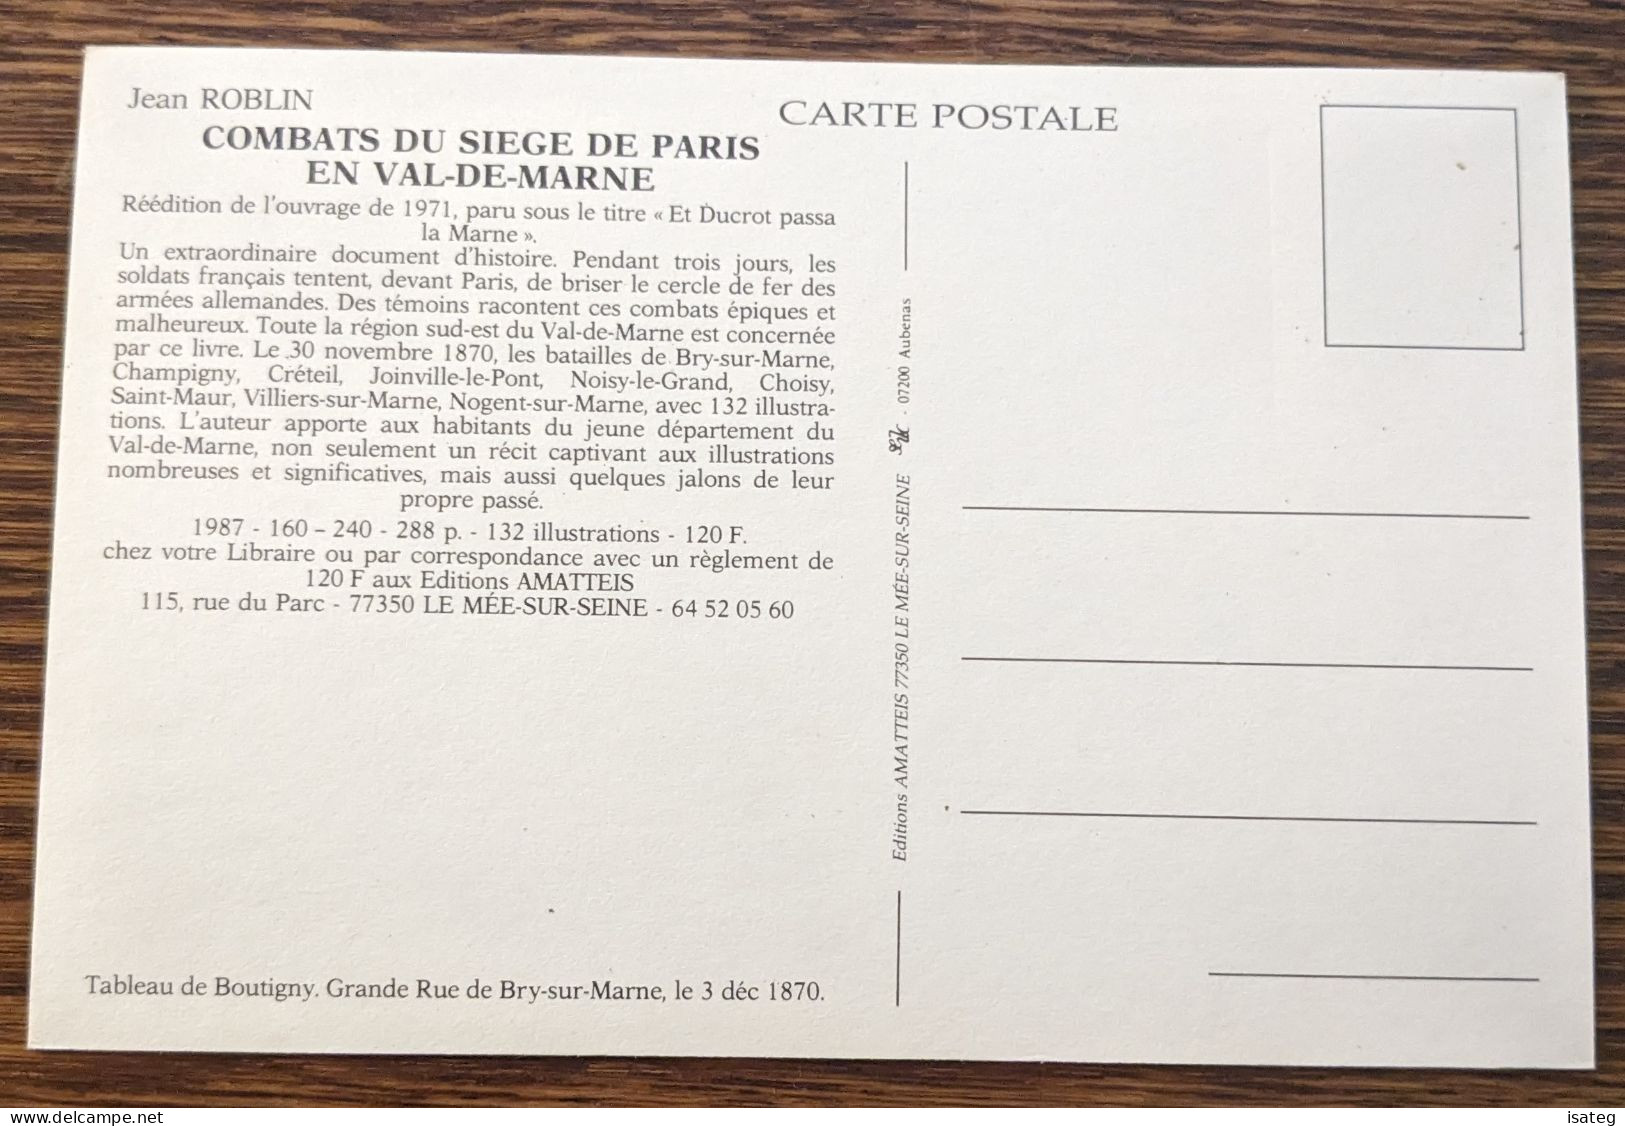 Carte Postale "Jean Roblin - Les Combats Du Siège De Paris" - Unclassified